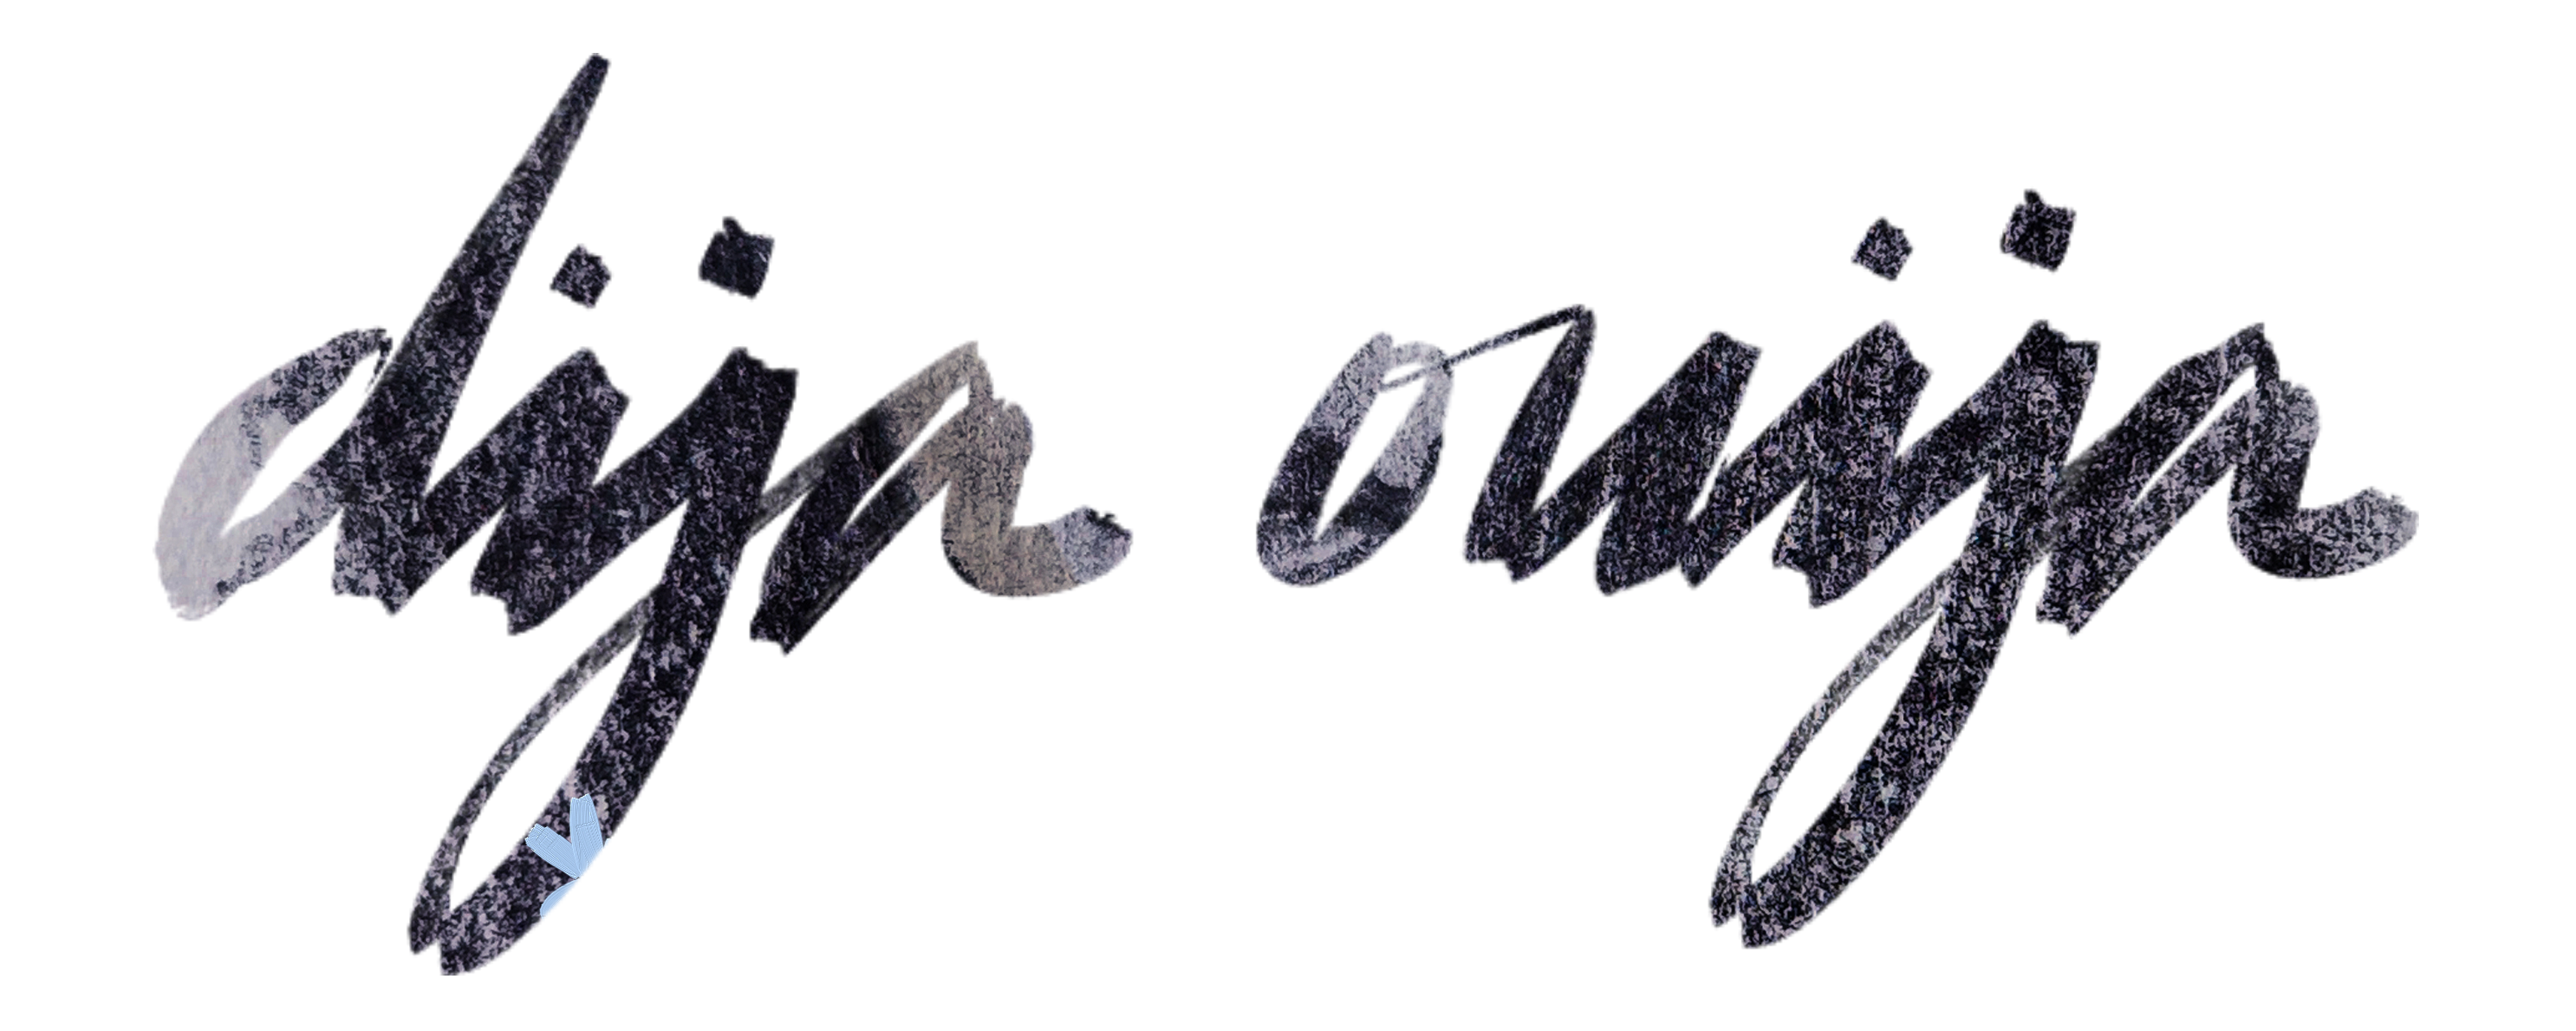 Dija Ouija Logo